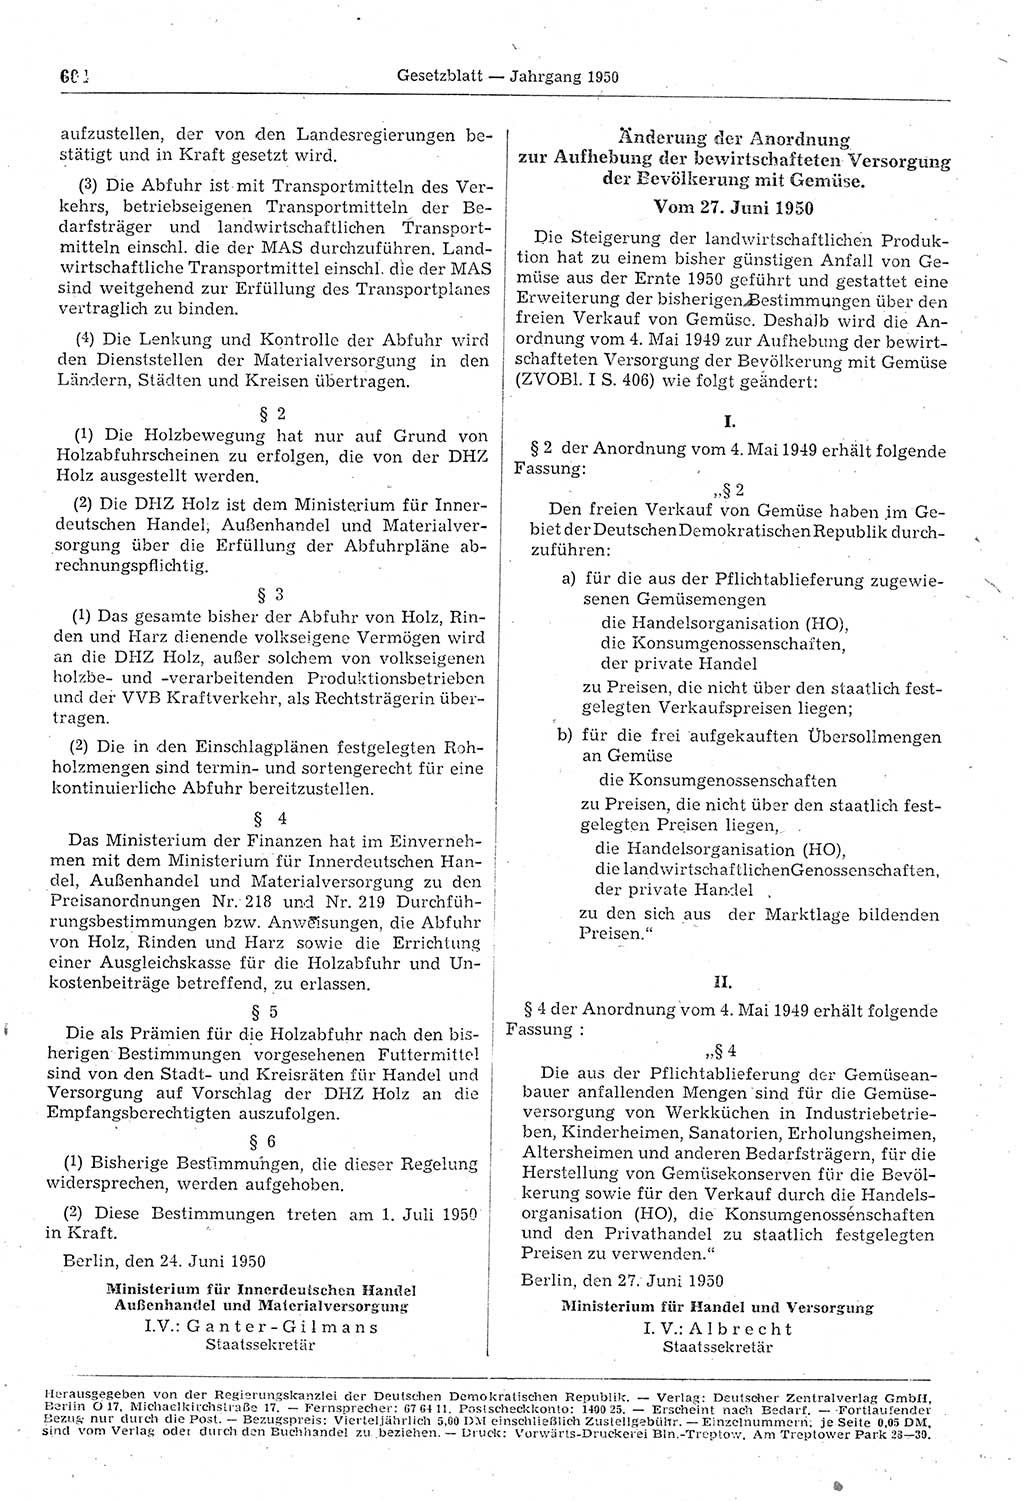 Gesetzblatt (GBl.) der Deutschen Demokratischen Republik (DDR) 1950, Seite 604 (GBl. DDR 1950, S. 604)